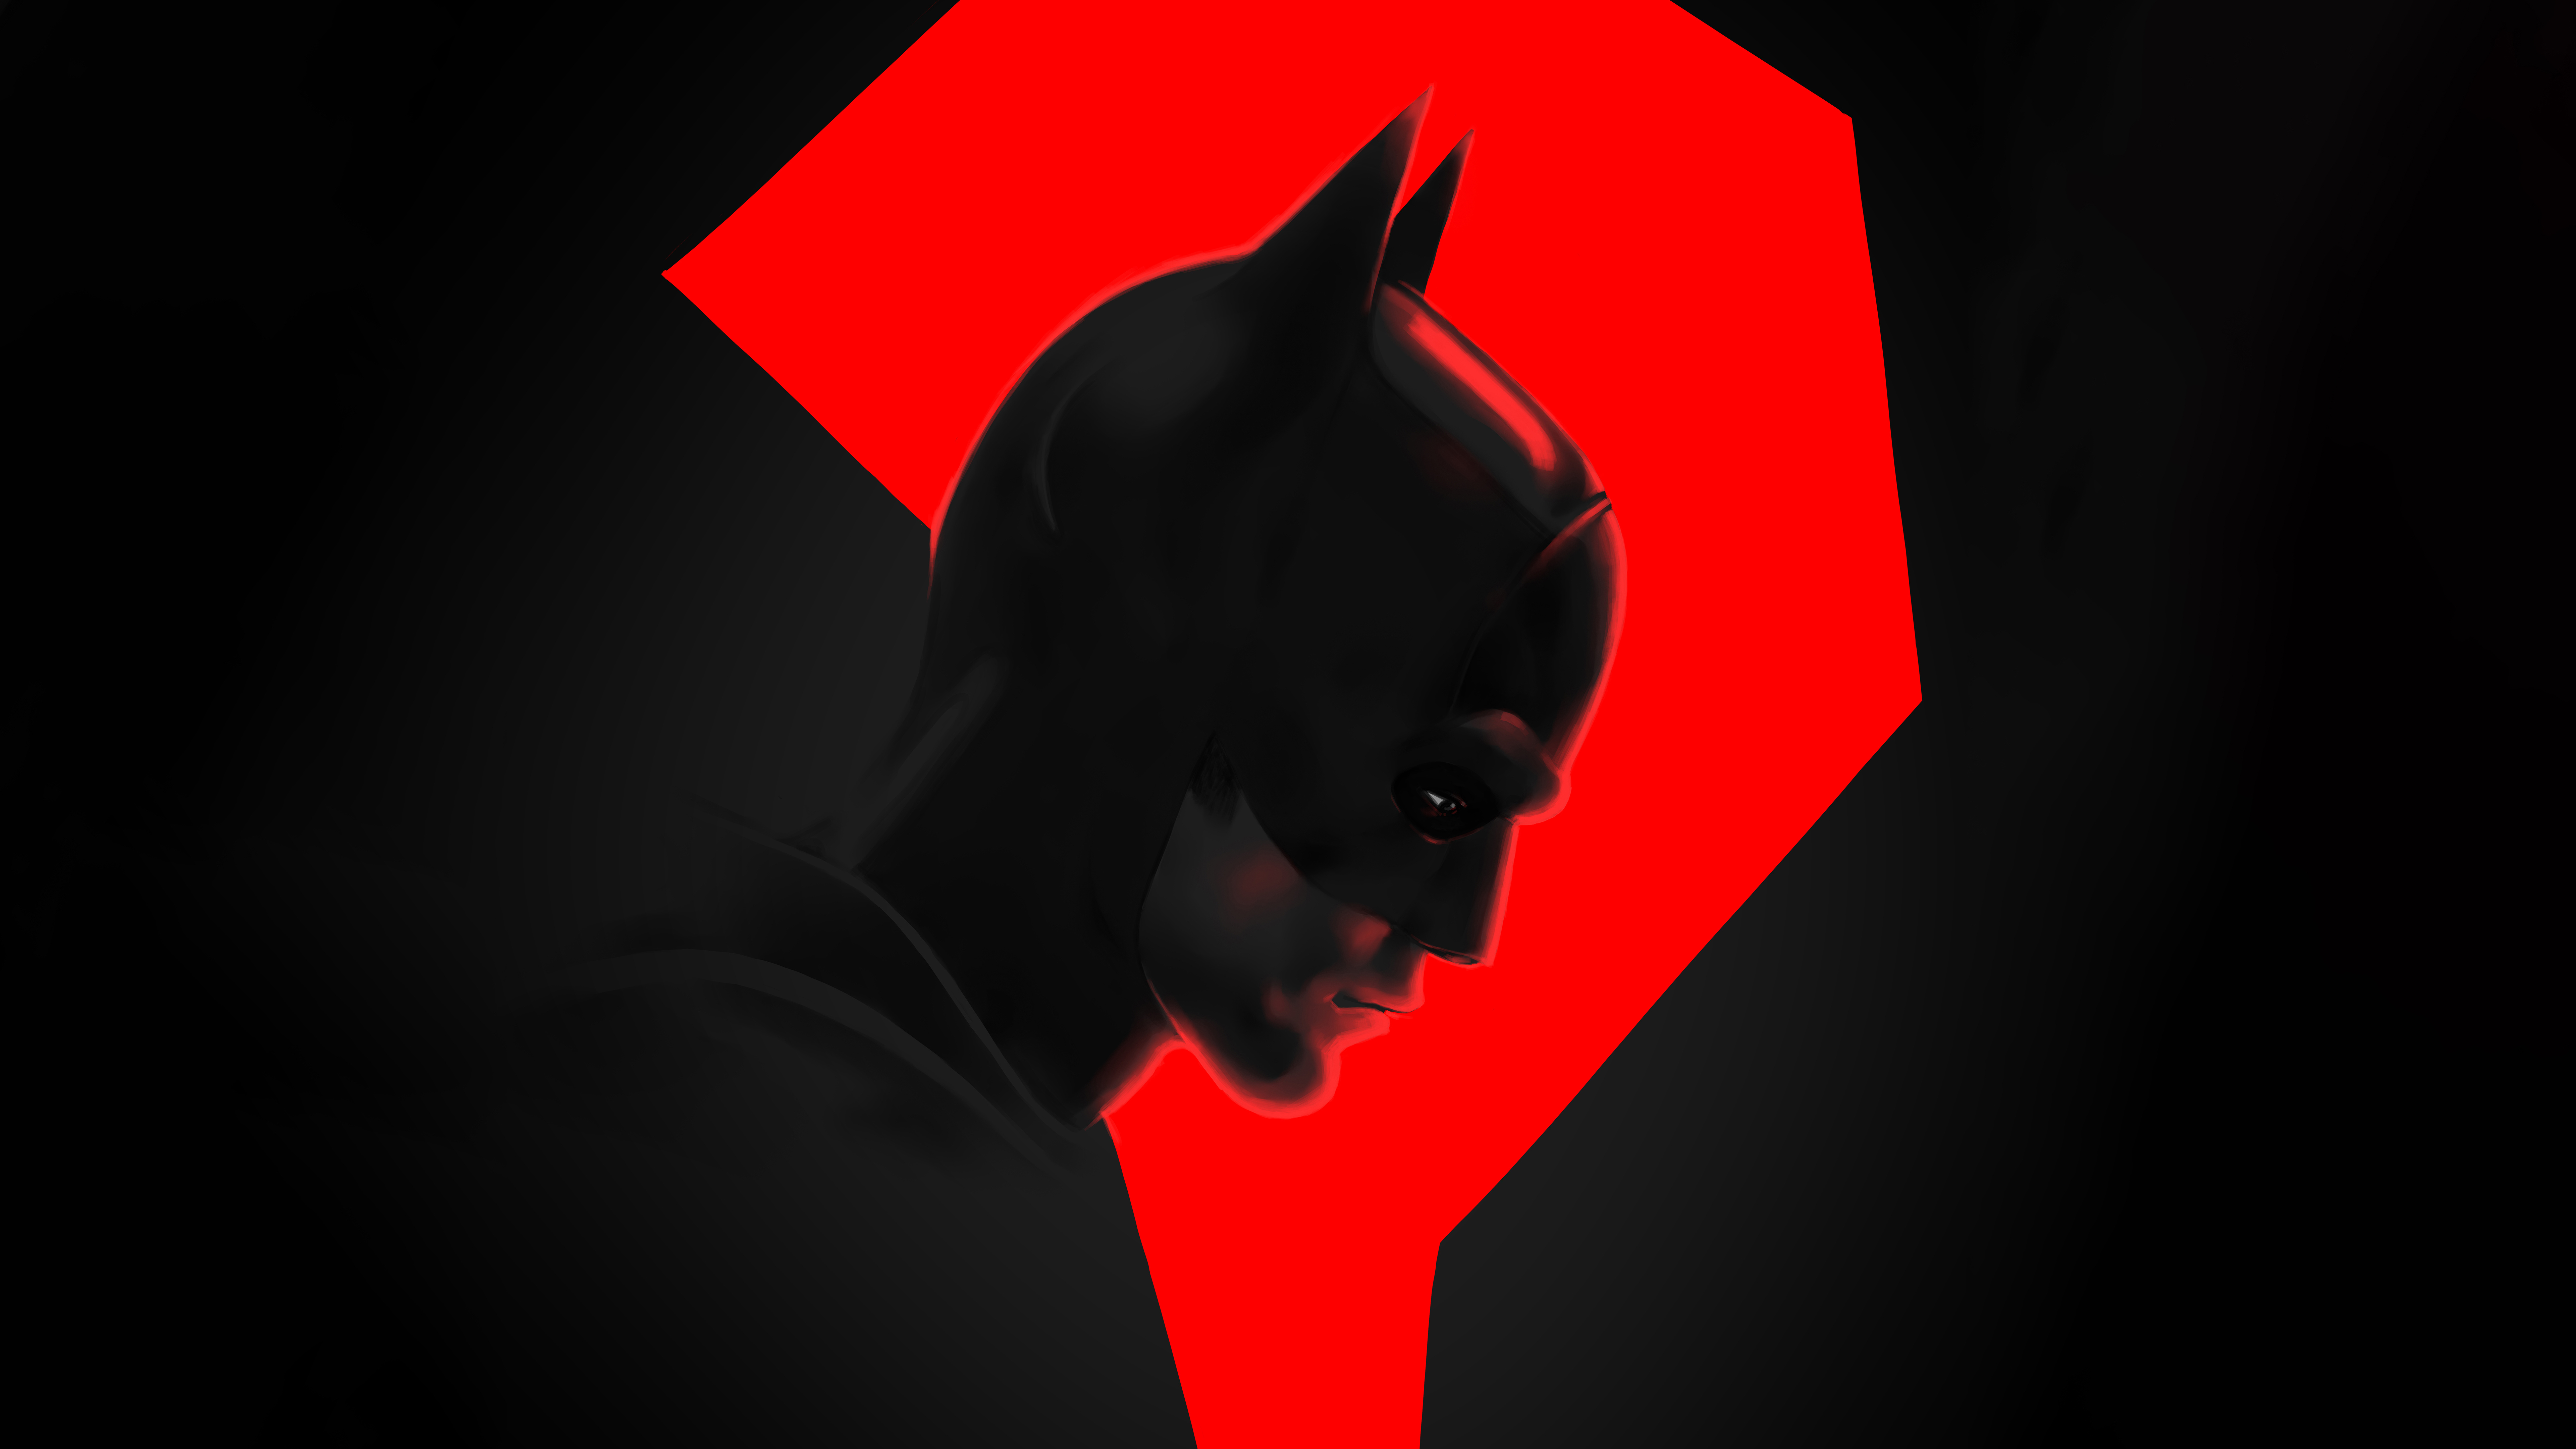 The Batman movie dark minimal wallpaper background  KDE Store